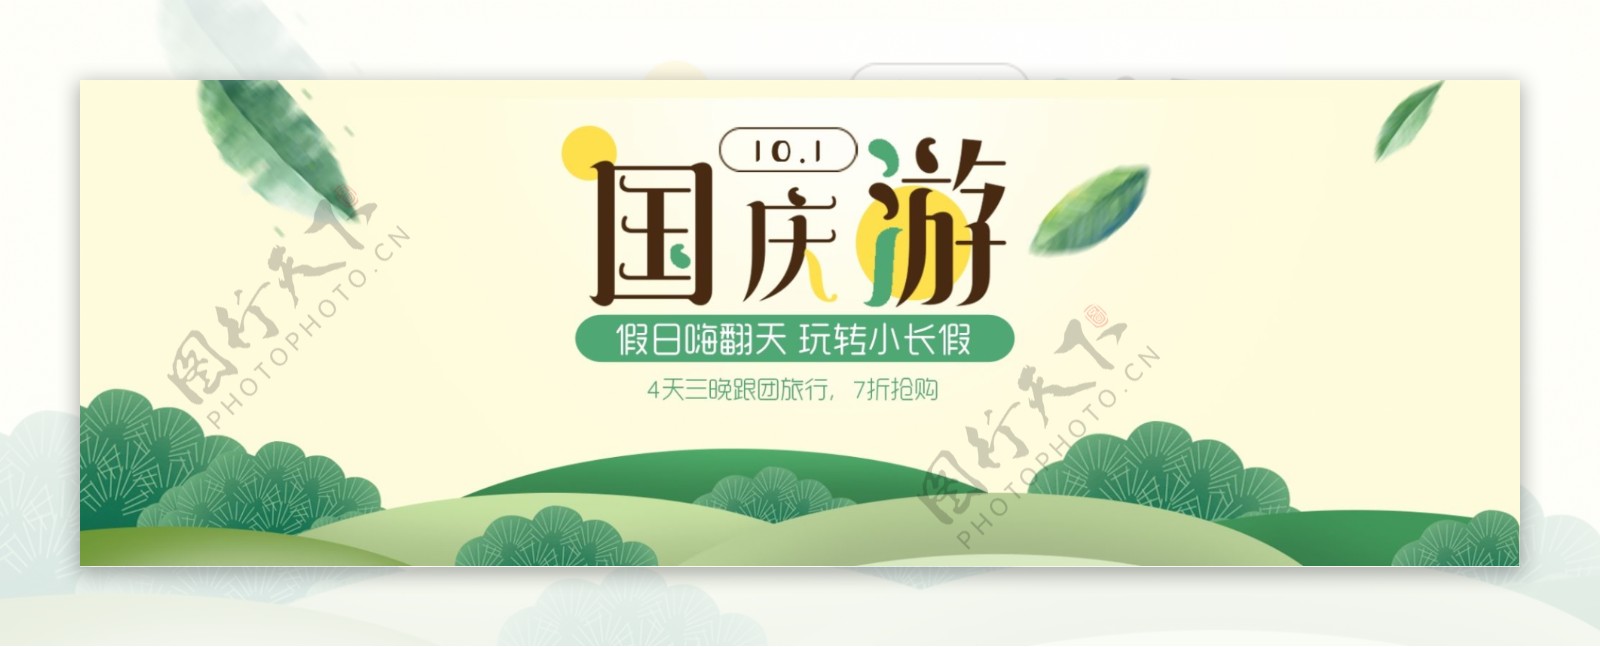 天猫电商淘宝国庆出游季十一10.1海报banner模板设计黄金周